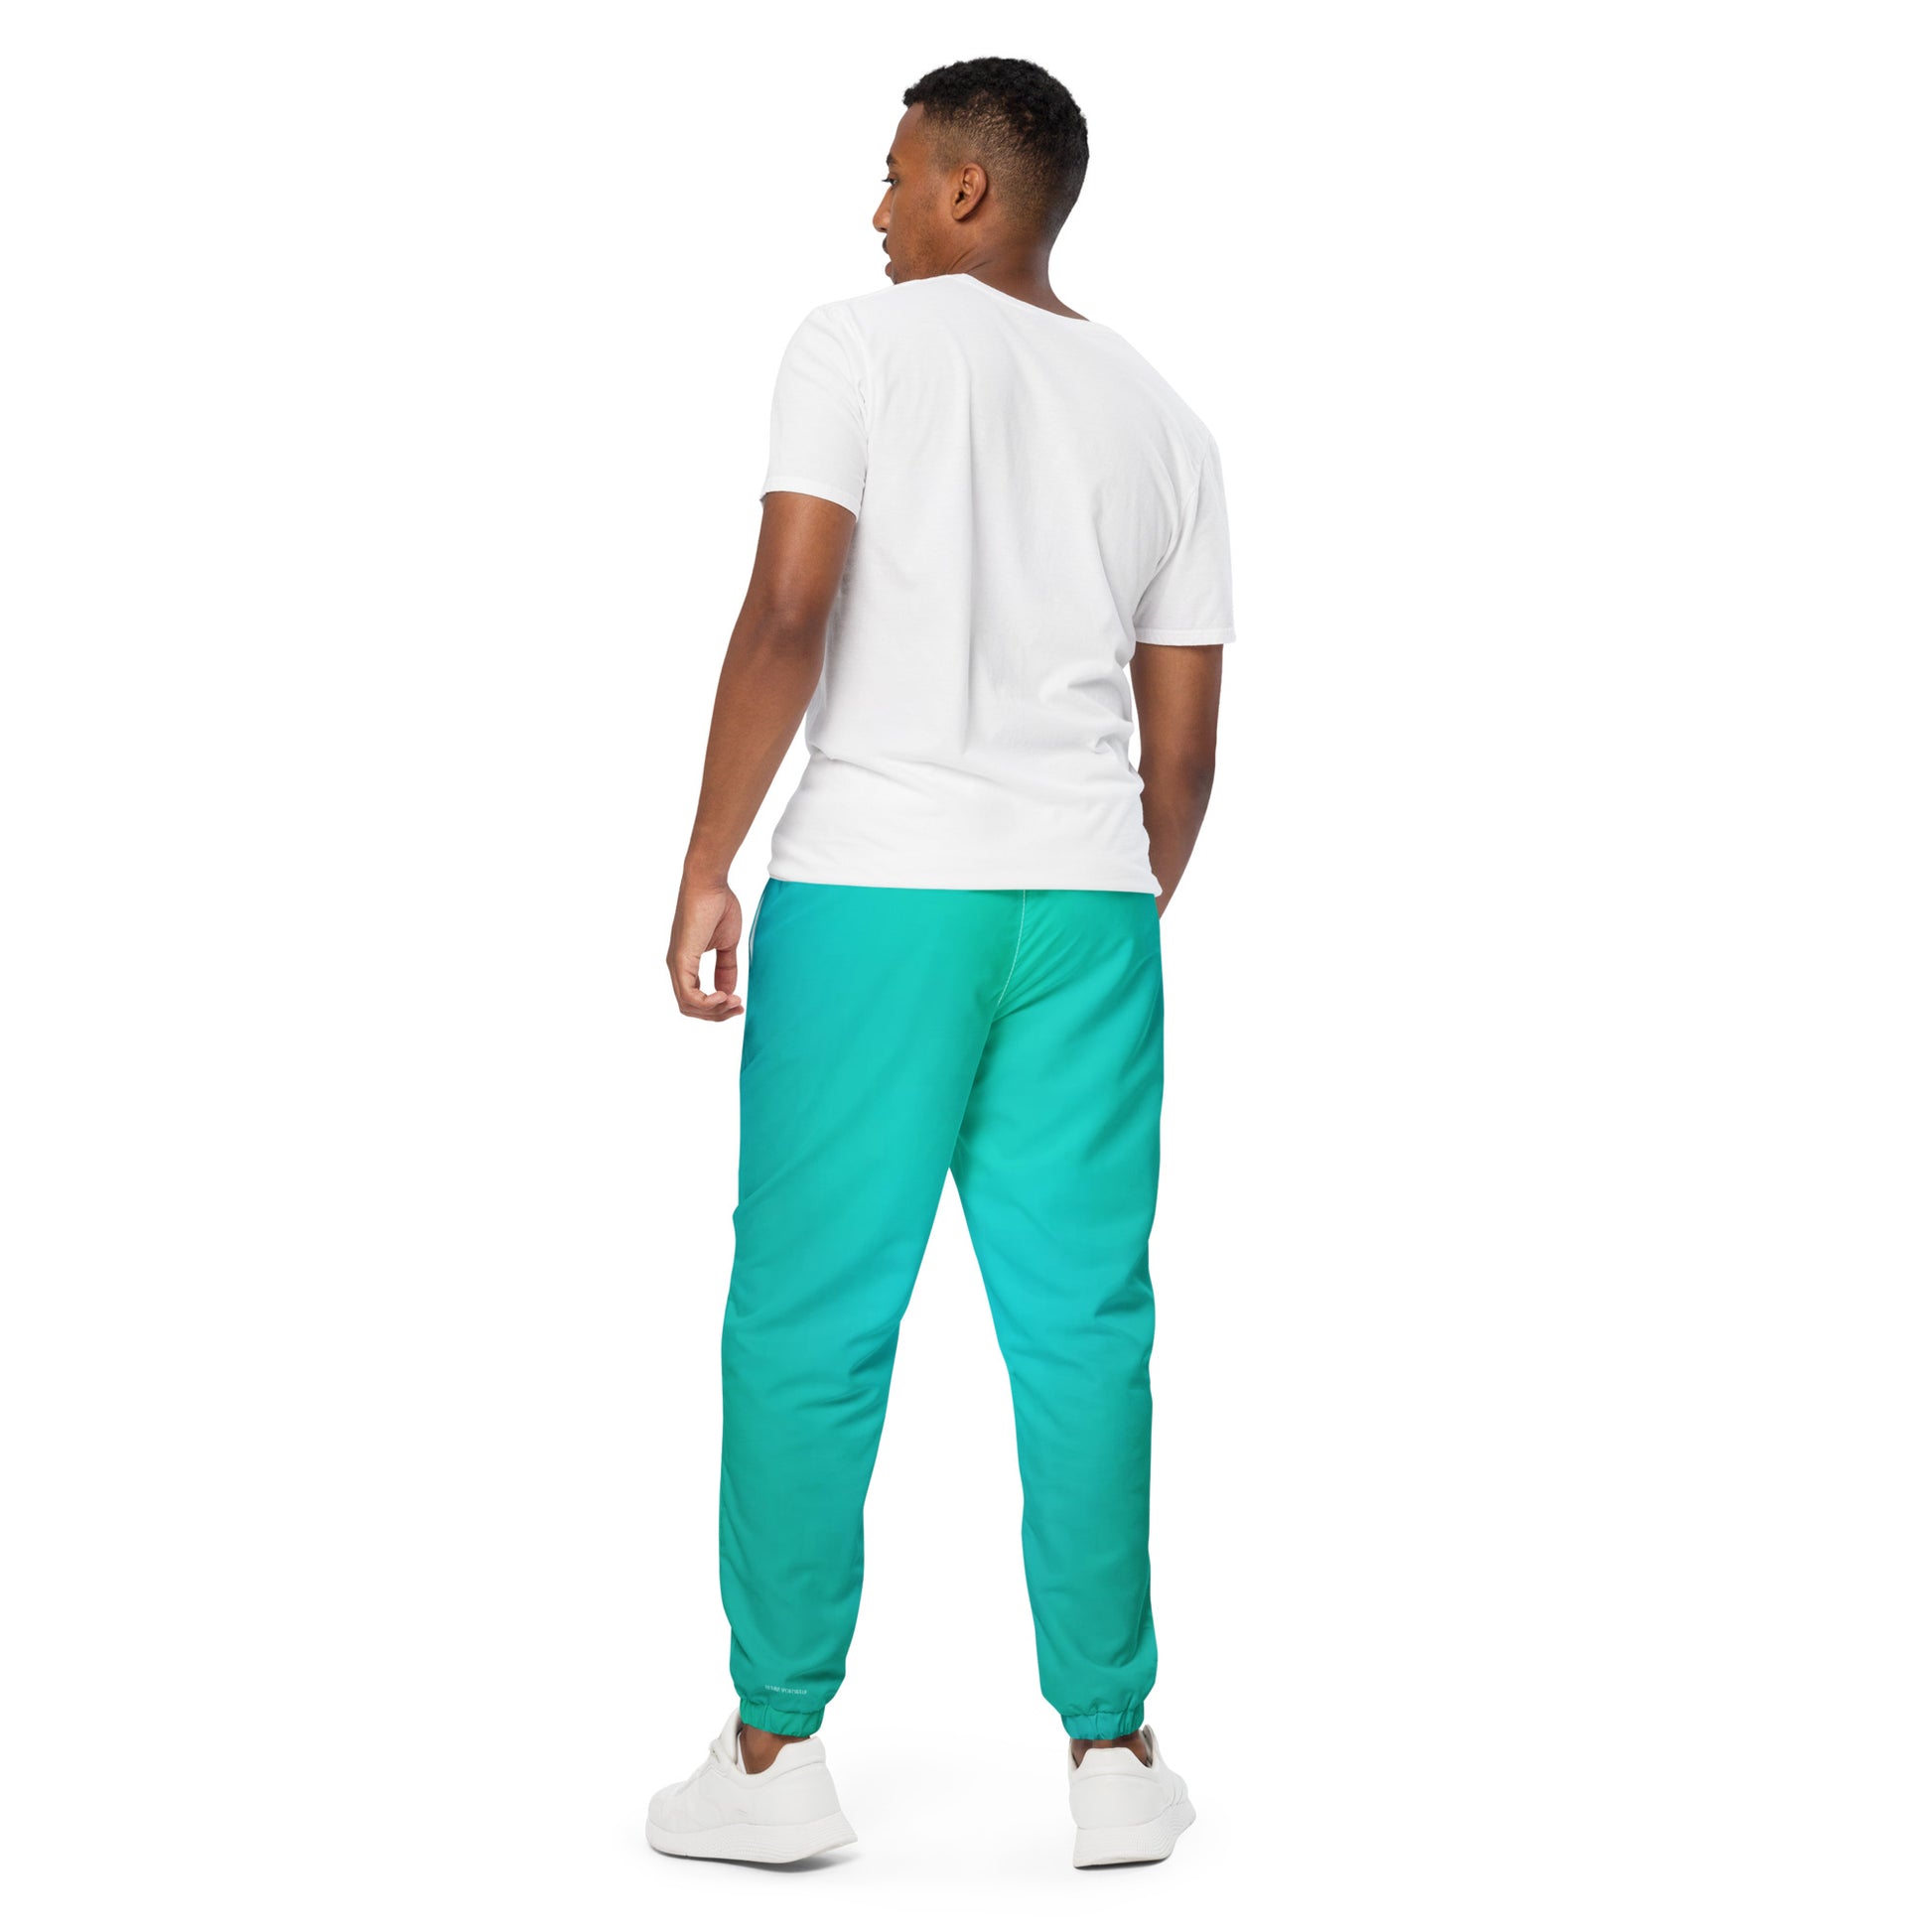 Humble Sportswear™ Men's Spectra Blue Track Pants - Mireille Fine Art